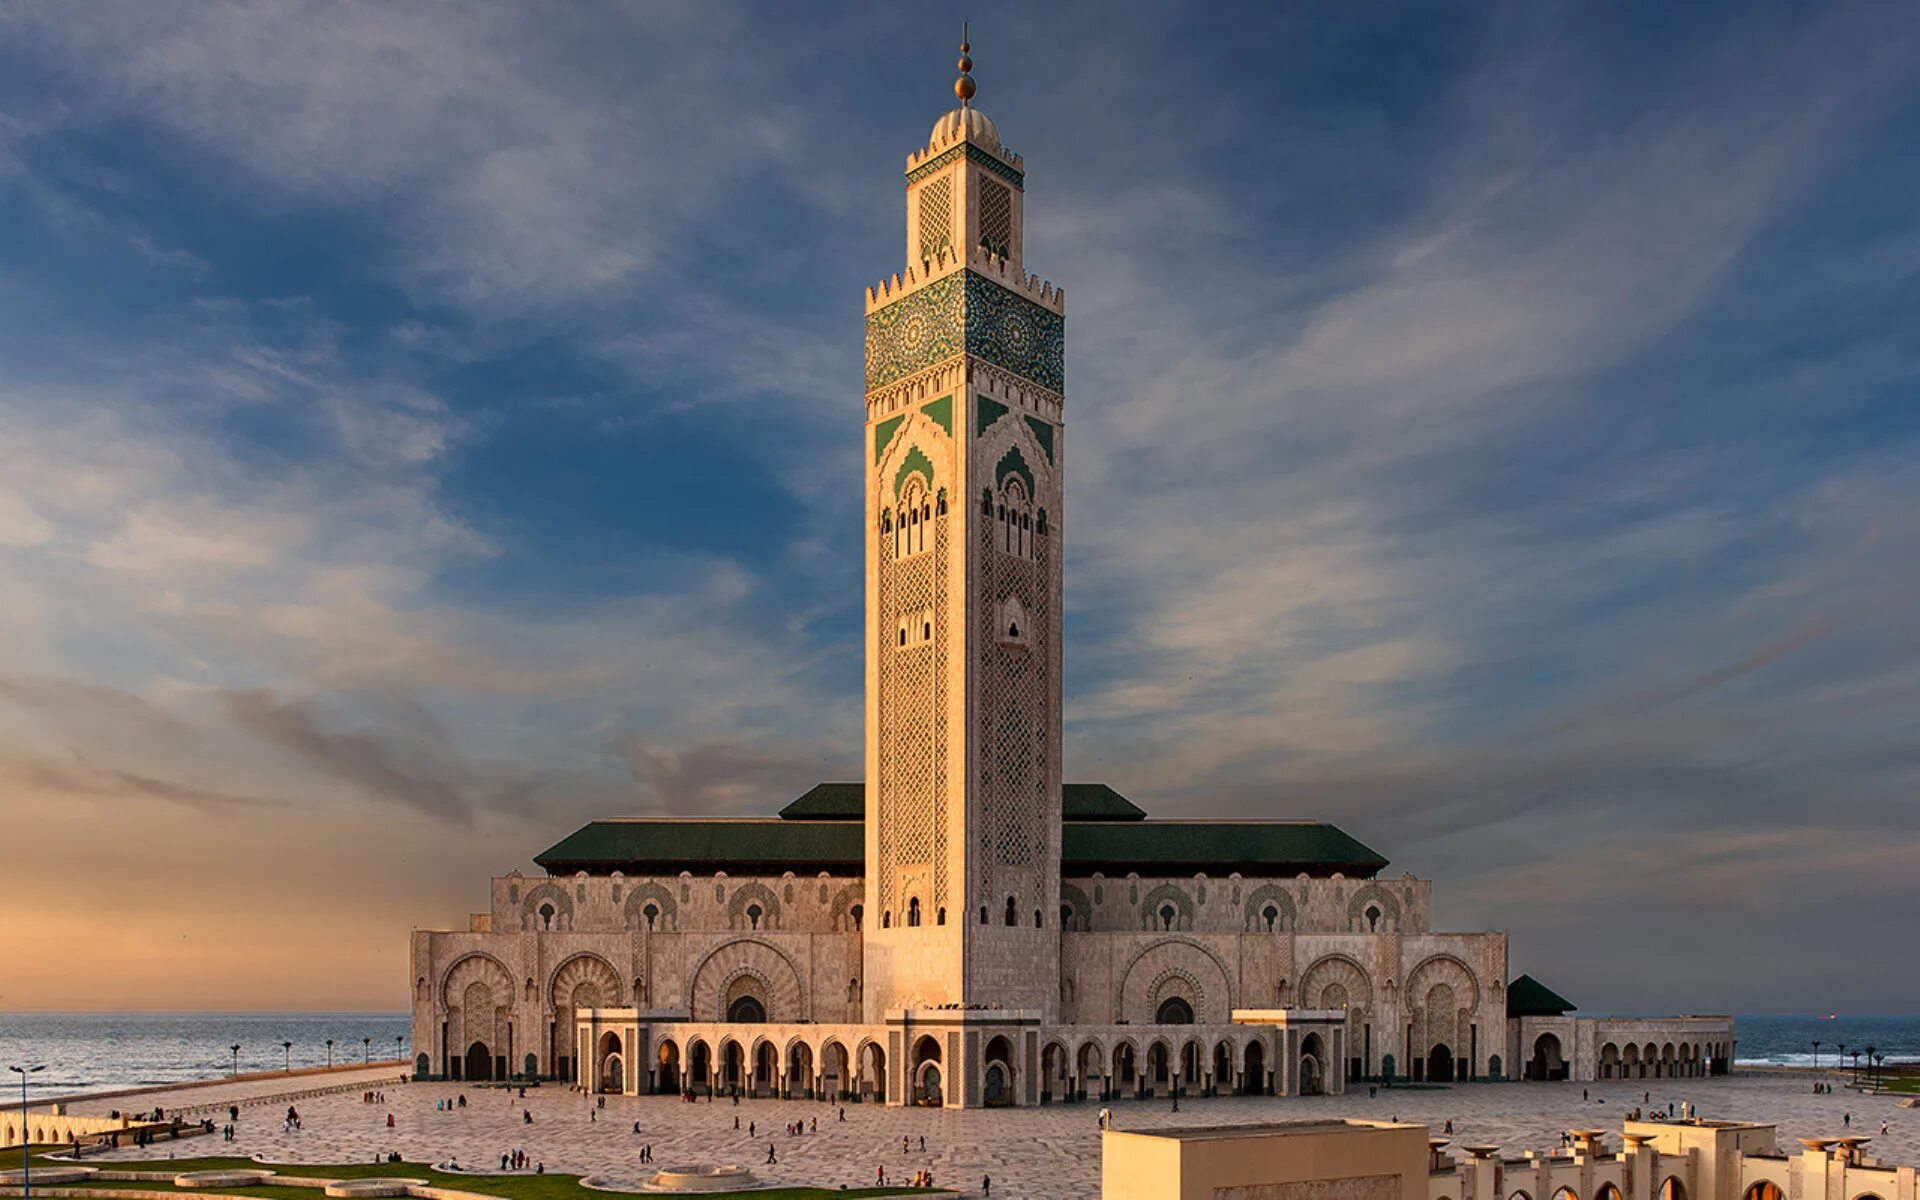 Касабланка описание. Великая мечеть Хассана II, Касабланка. Мечеть Хасана 2 в Марокко. Касабланка Марокко мечеть Хасана. 4. Великая мечеть Хассана II, Касабланка (Марокко).